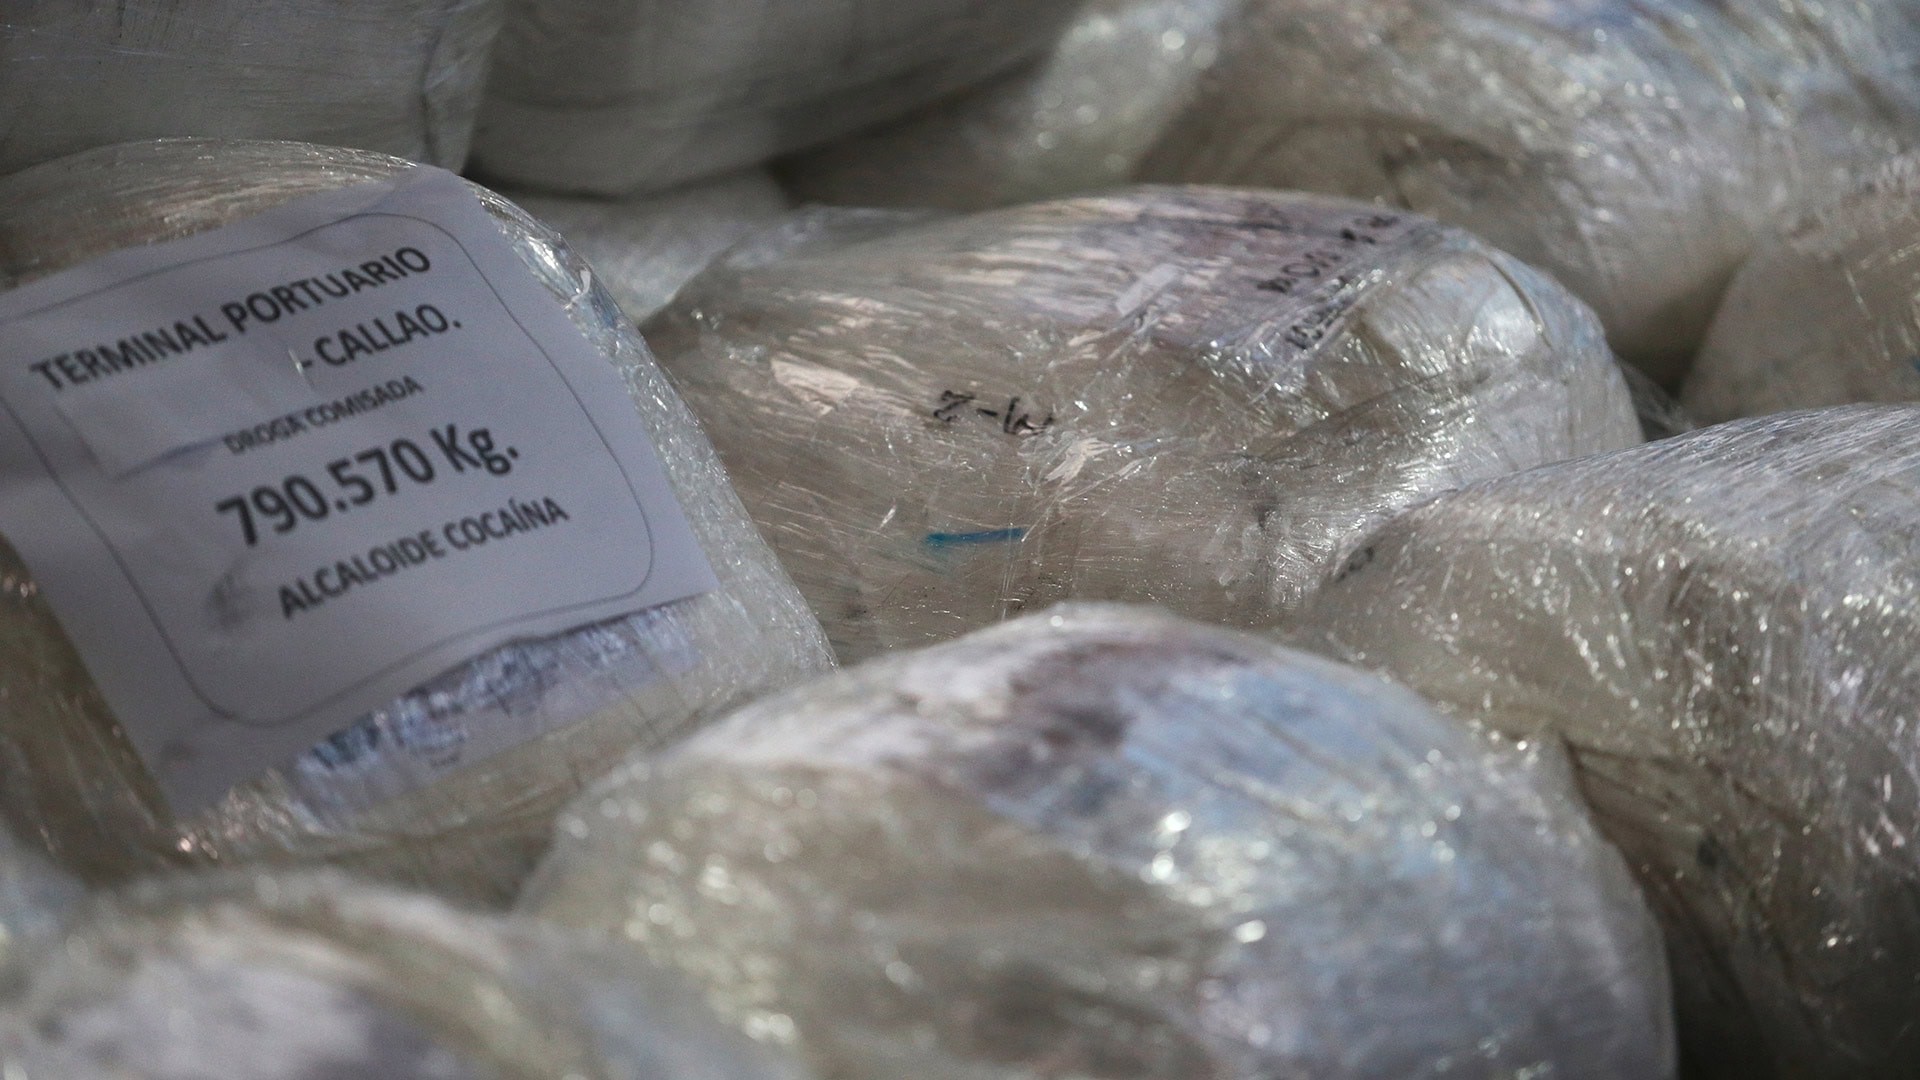 Incautadas en Colombia 2,4 toneladas de cocaína con destino a España